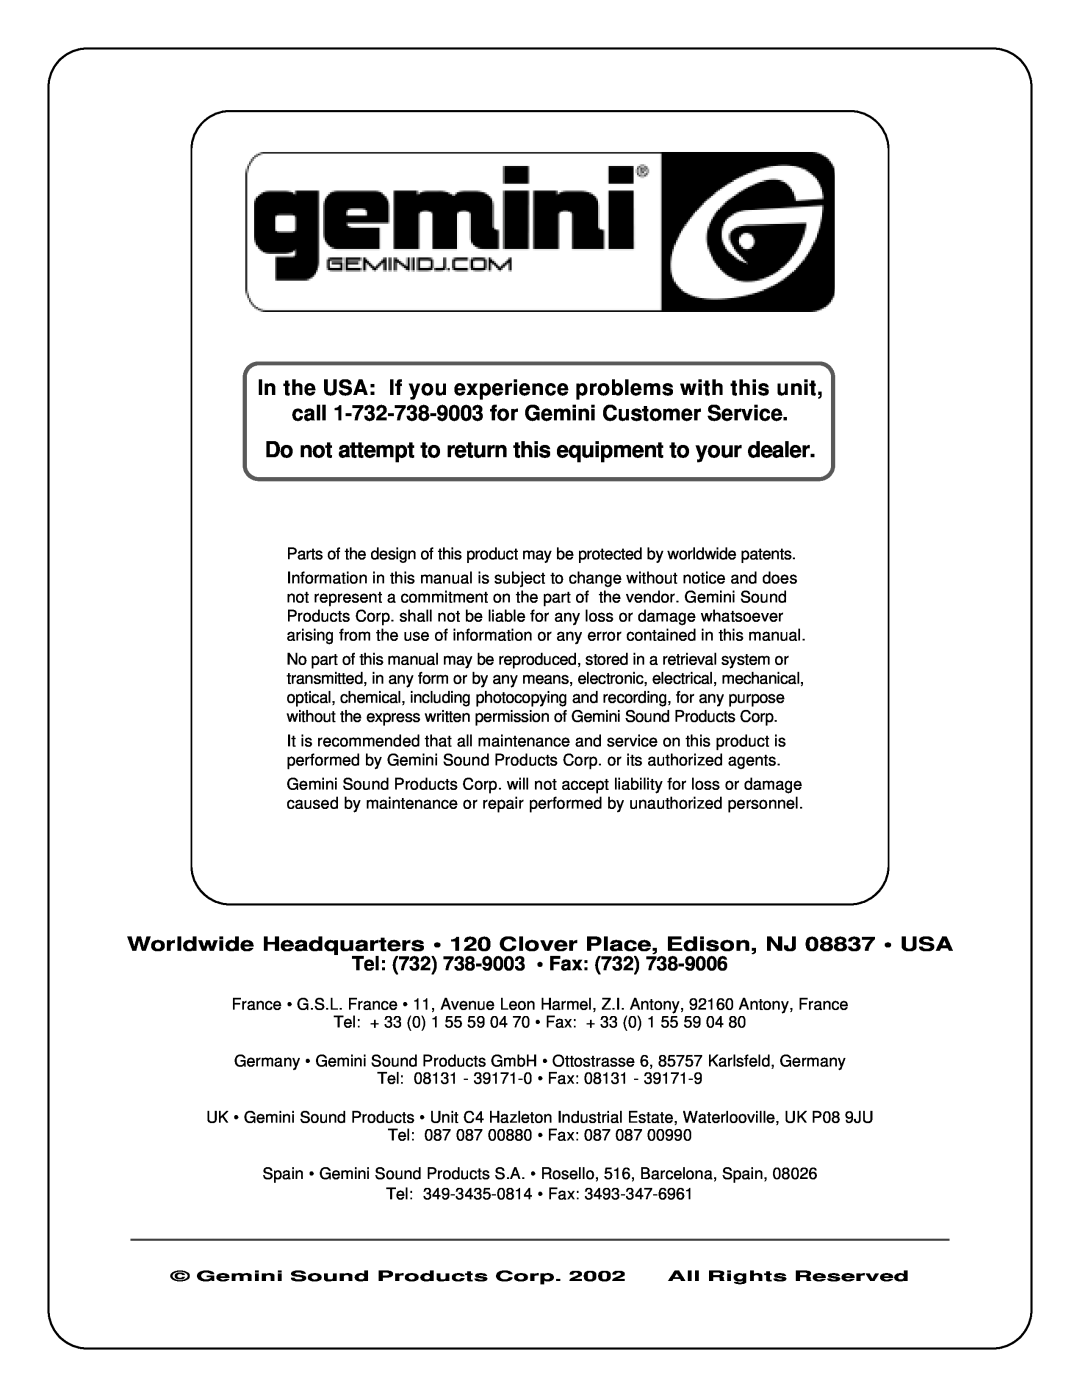 Gemini PS-727 manual call 1-732-738-9003for Gemini Customer Service, Tel 732 738-9003 Fax 